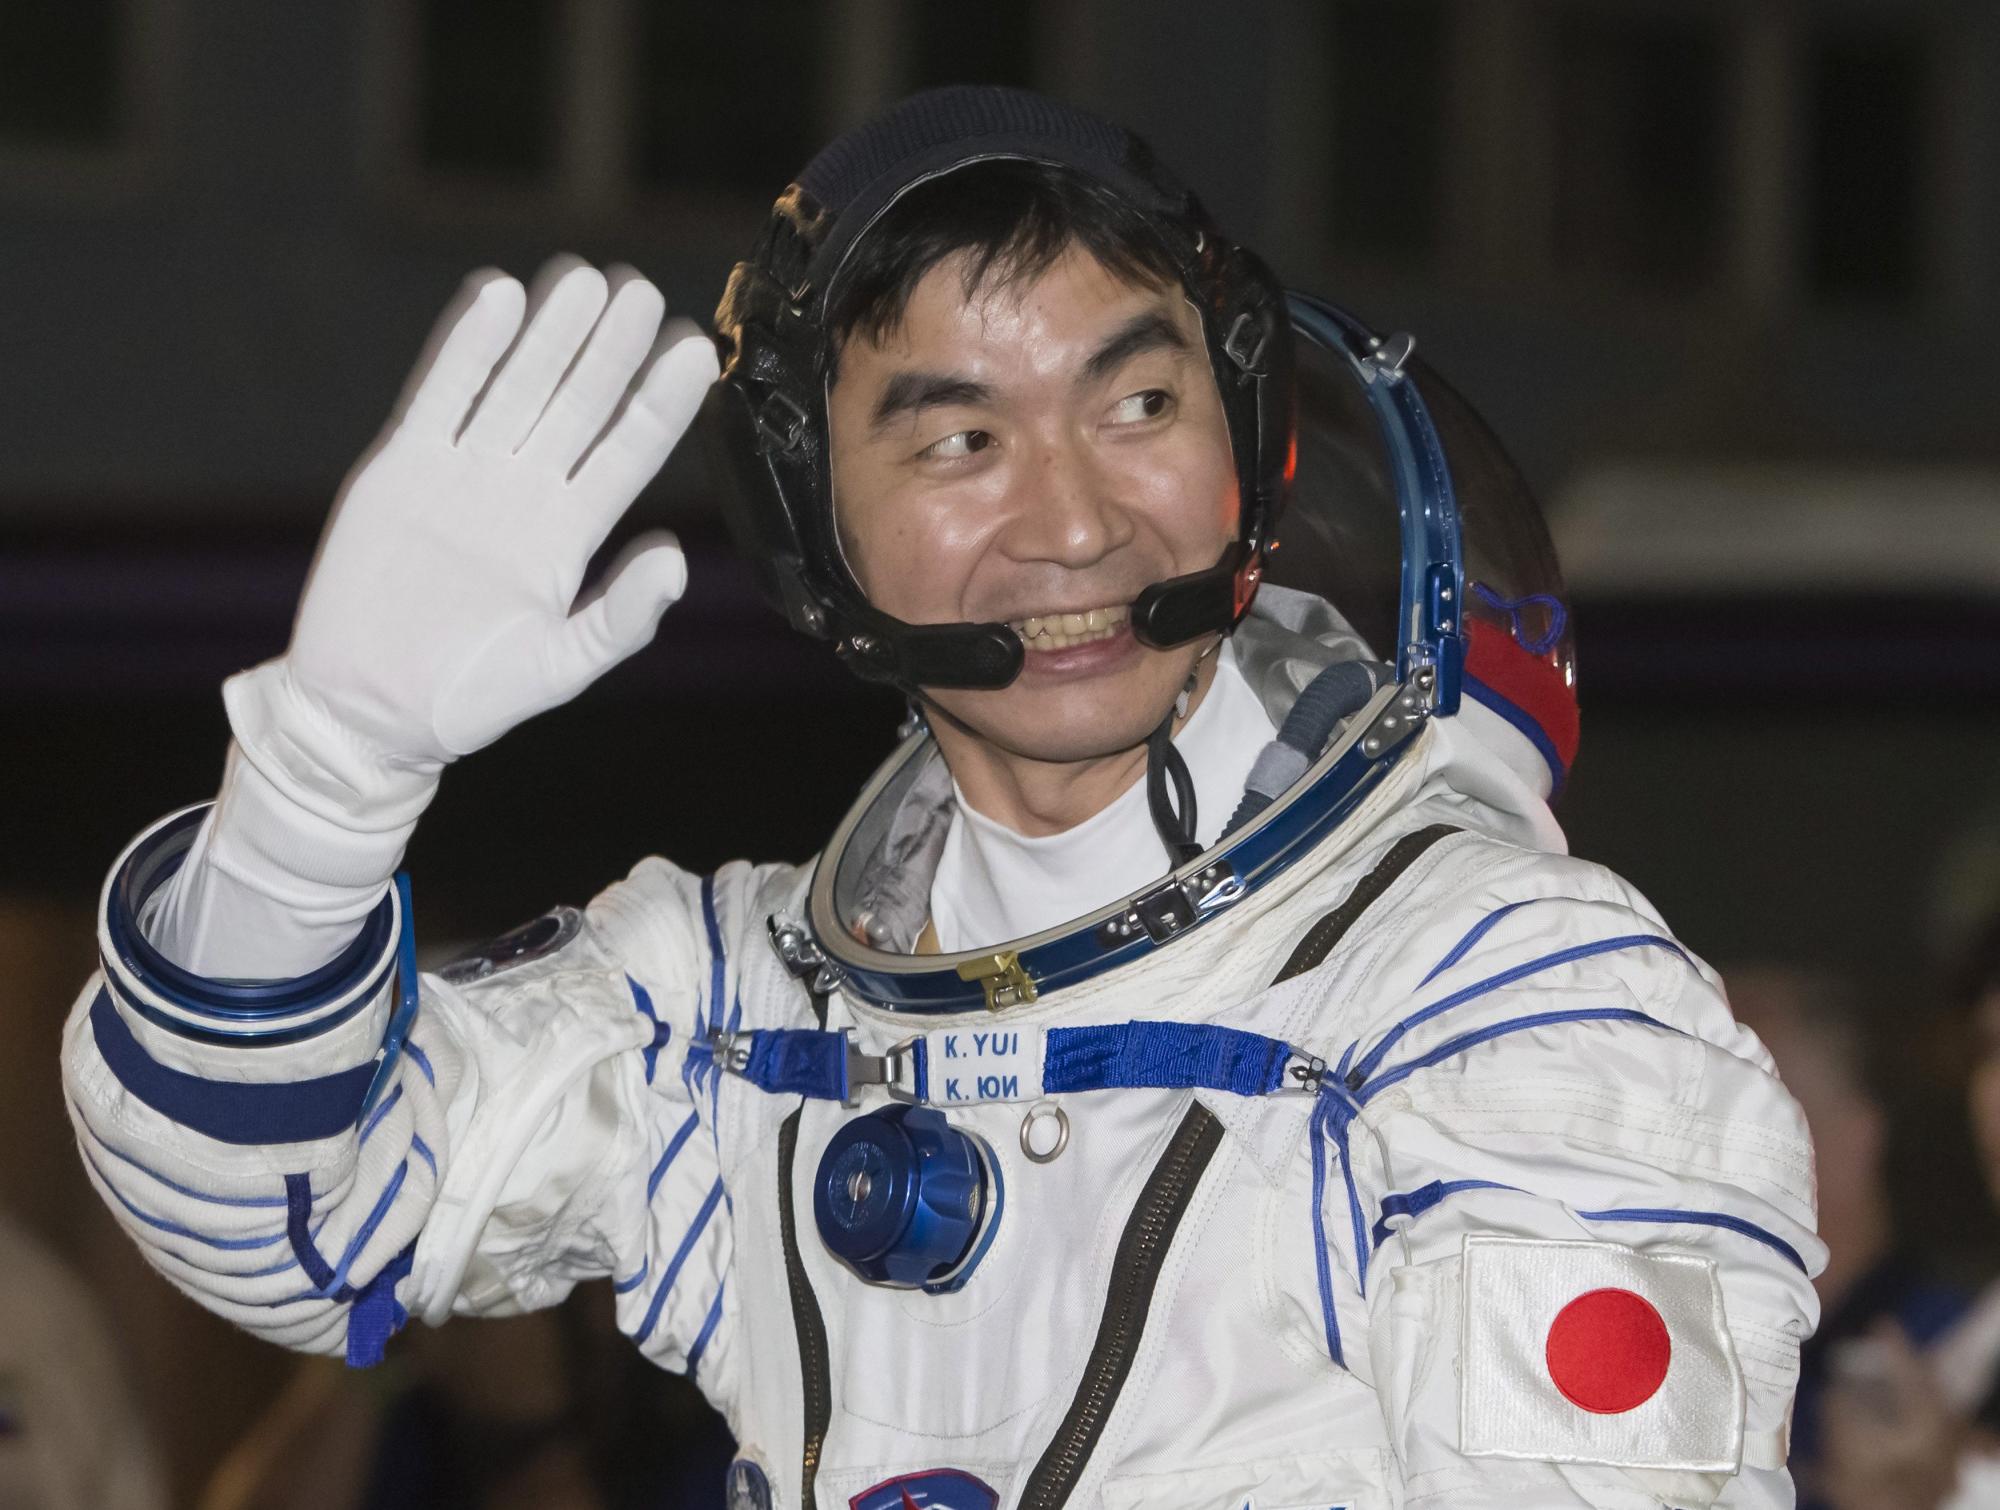 El astronauta japonés Kimiya Yui, miembro de la tripulación 44/45 es visto hoy, miércoles 22 de julio de 2015, durante la ceremonia antes del despegue del cohete Soyuz TMA-17M de la Estación Espacial ISS en Baikonur (Kazajistán).